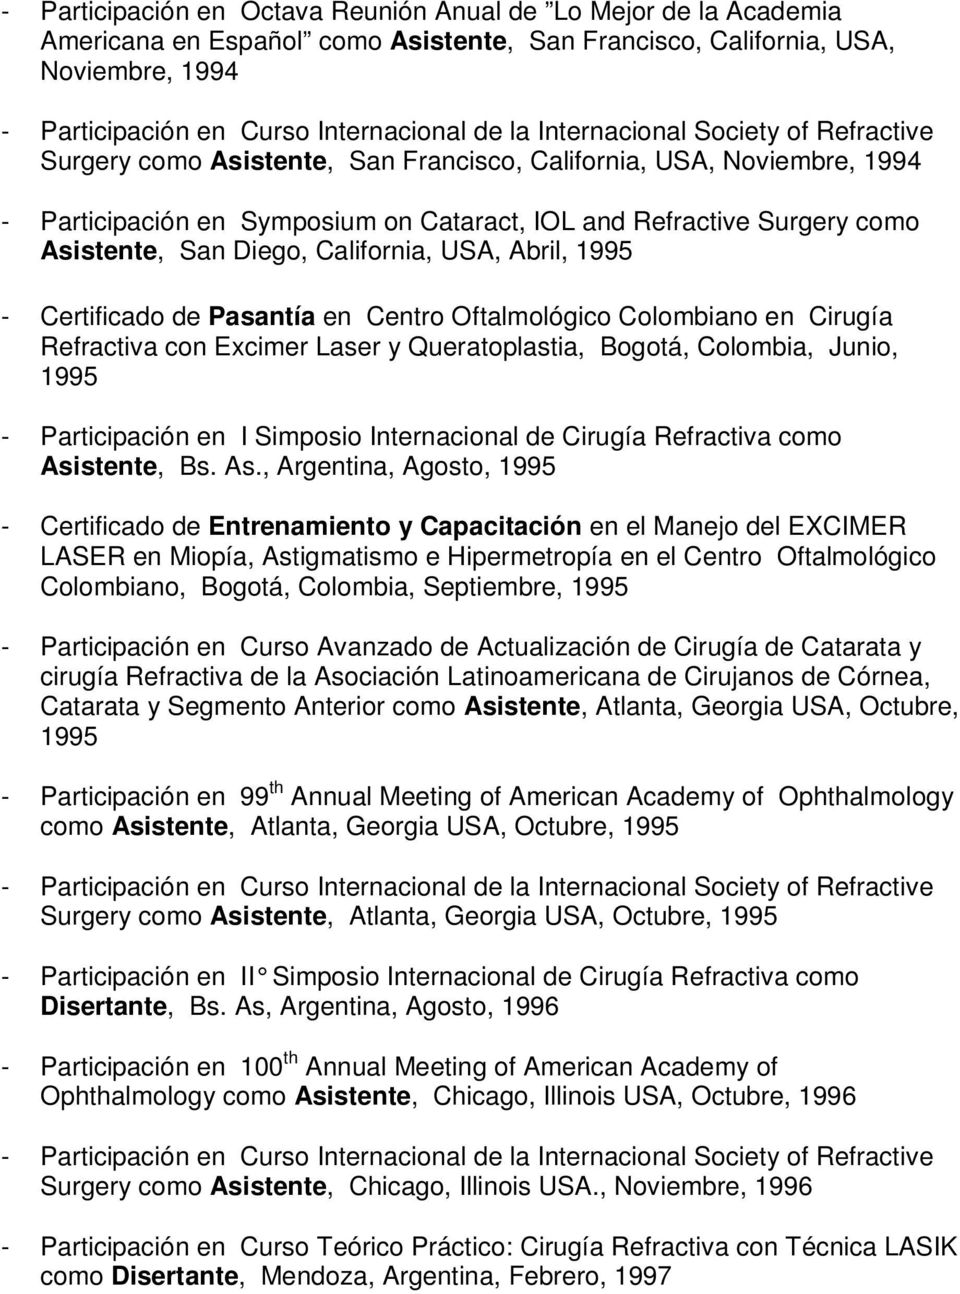 Diego, California, USA, Abril, 1995 - Certificado de Pasantía en Centro Oftalmológico Colombiano en Cirugía Refractiva con Excimer Laser y Queratoplastia, Bogotá, Colombia, Junio, 1995 -